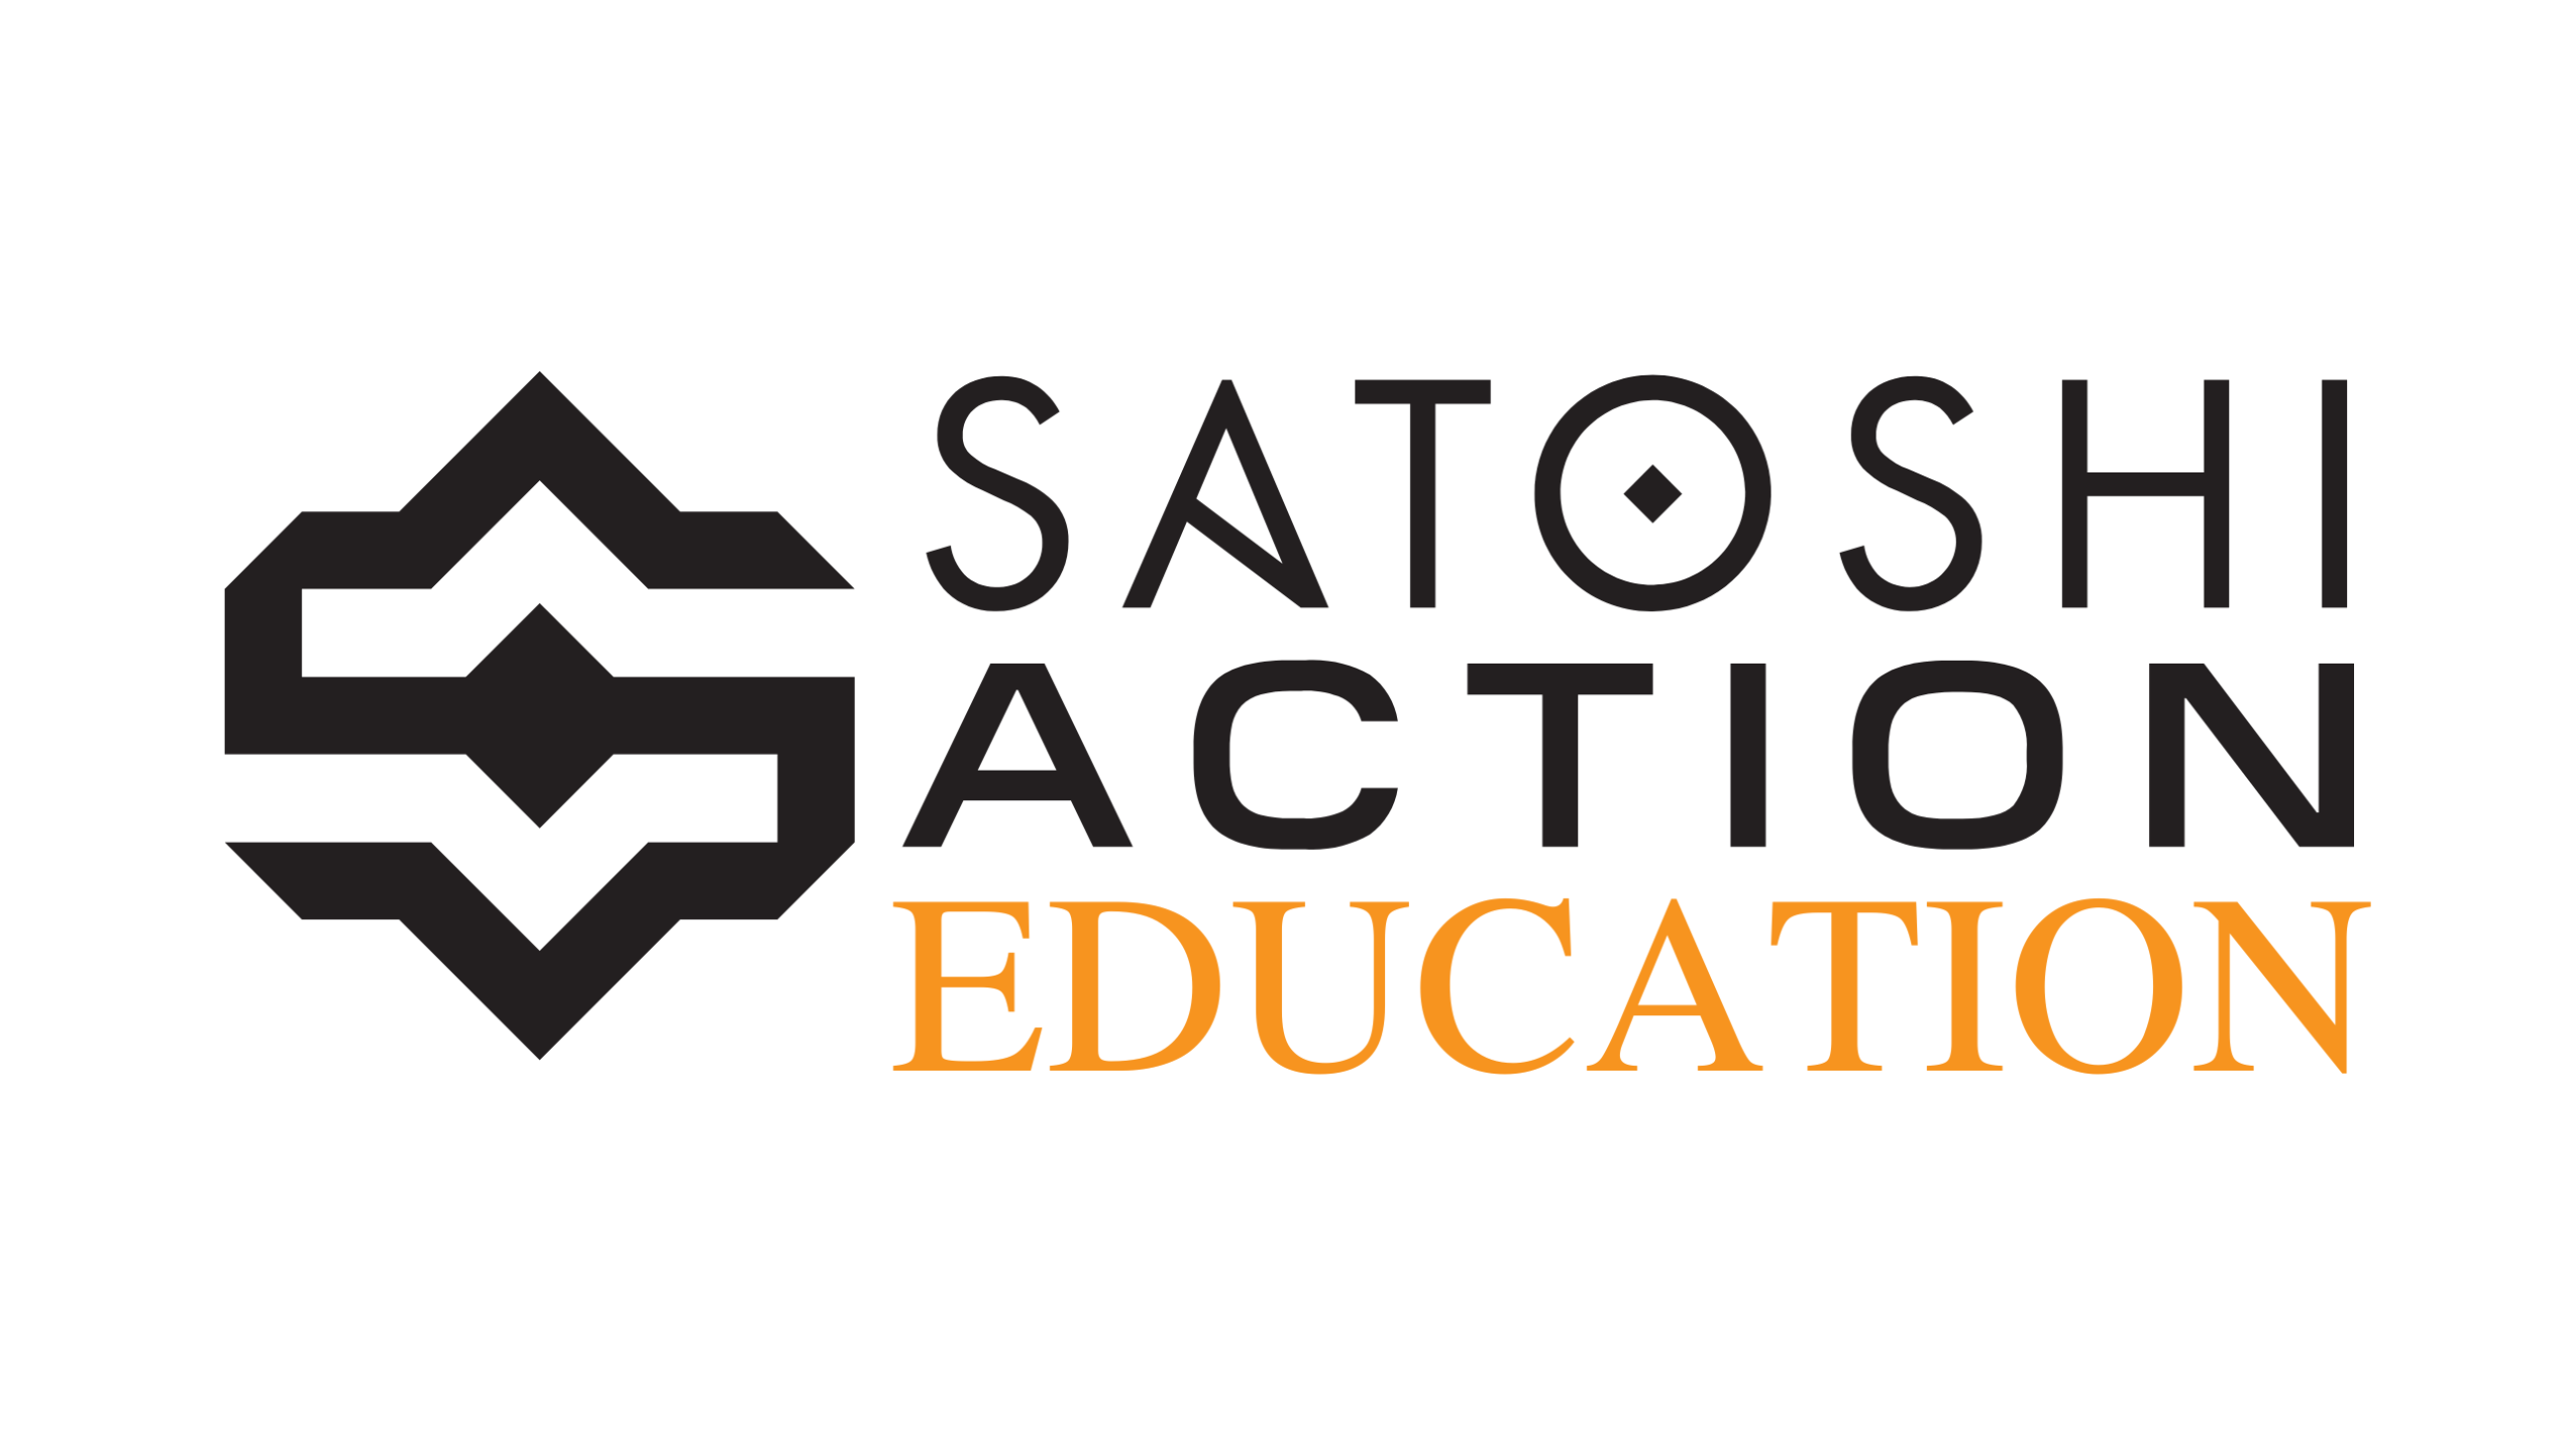 Satoshi Action Education logo